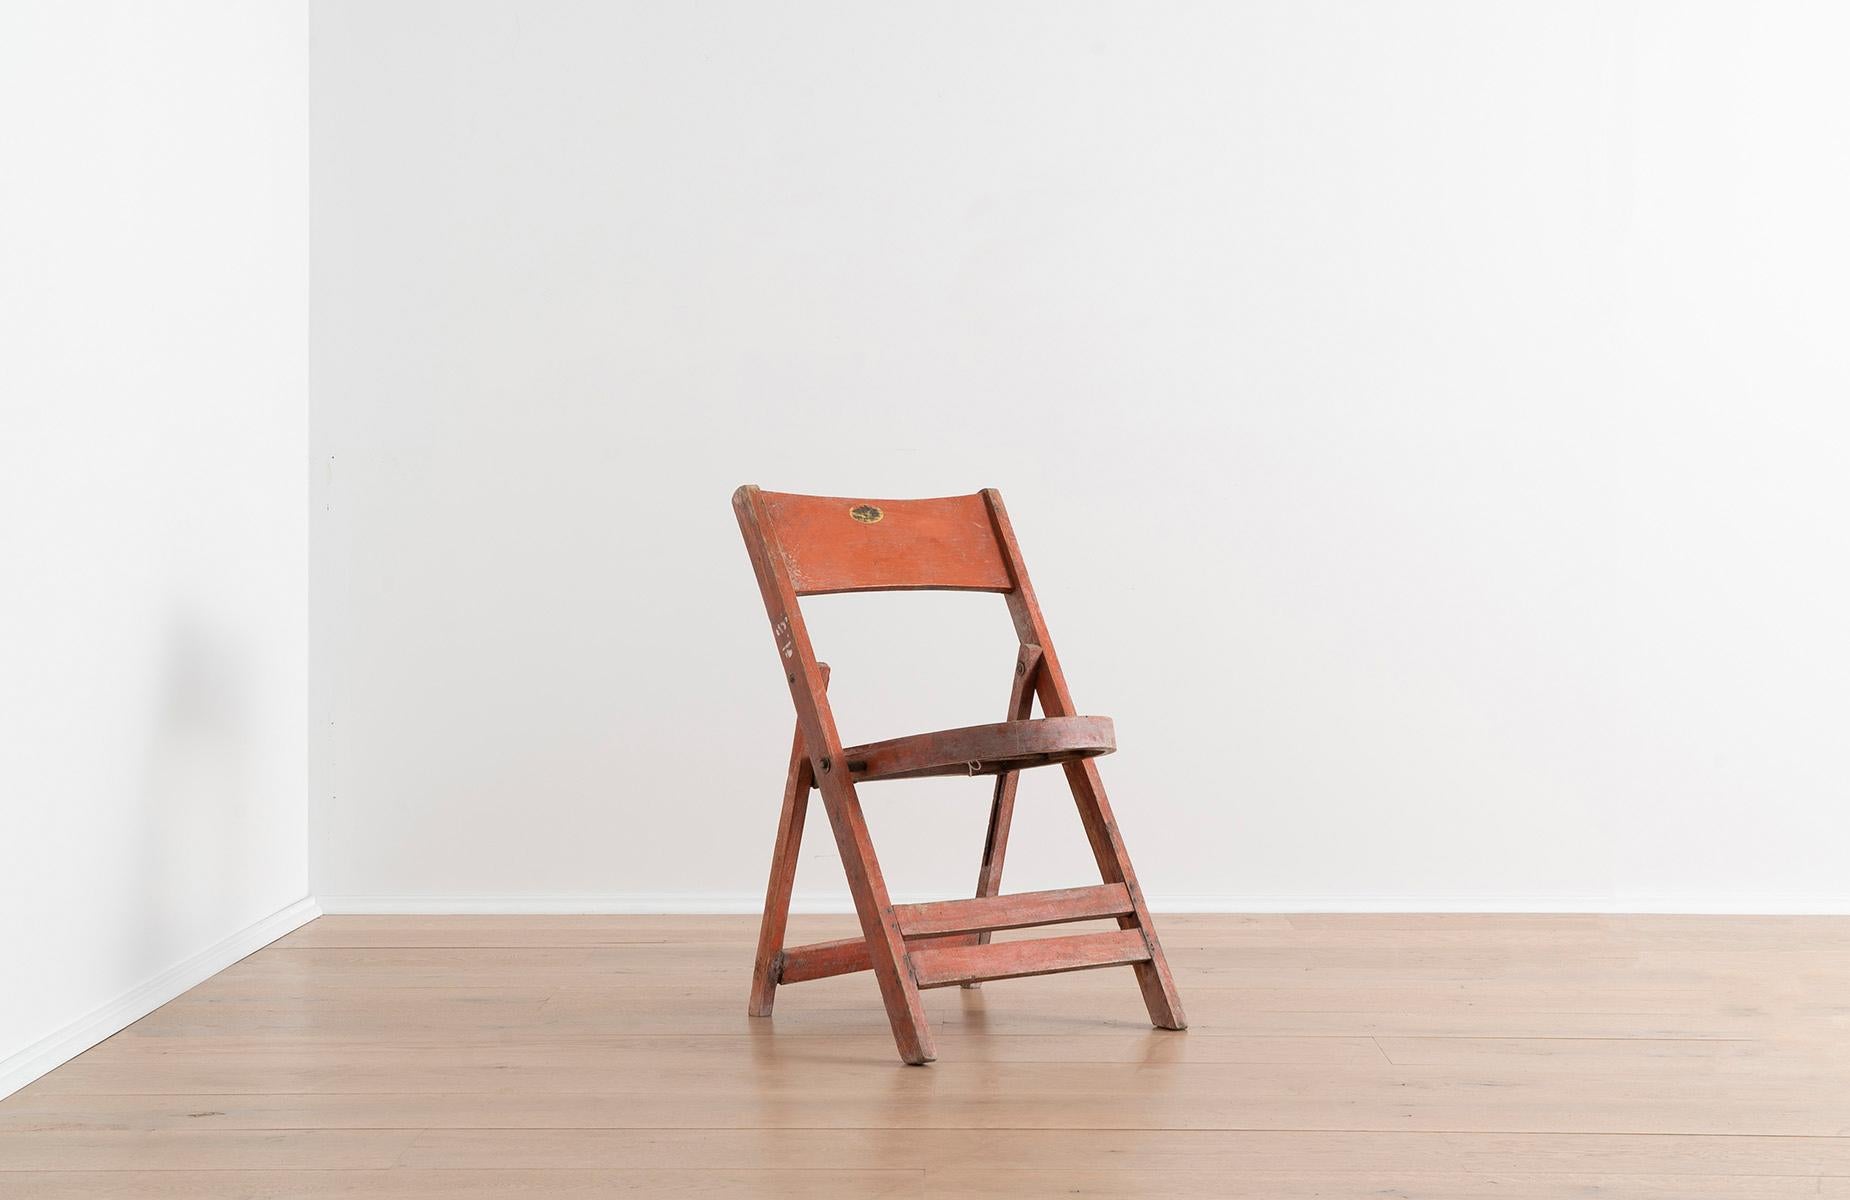 Ces chaises en bois orange peint se plient parfaitement à plat pour le rangement et s'ouvrent en douceur pour former un siège solide. Elles sont un merveilleux exemple de design américain simple. Les concepteurs de meubles américains ont innové des